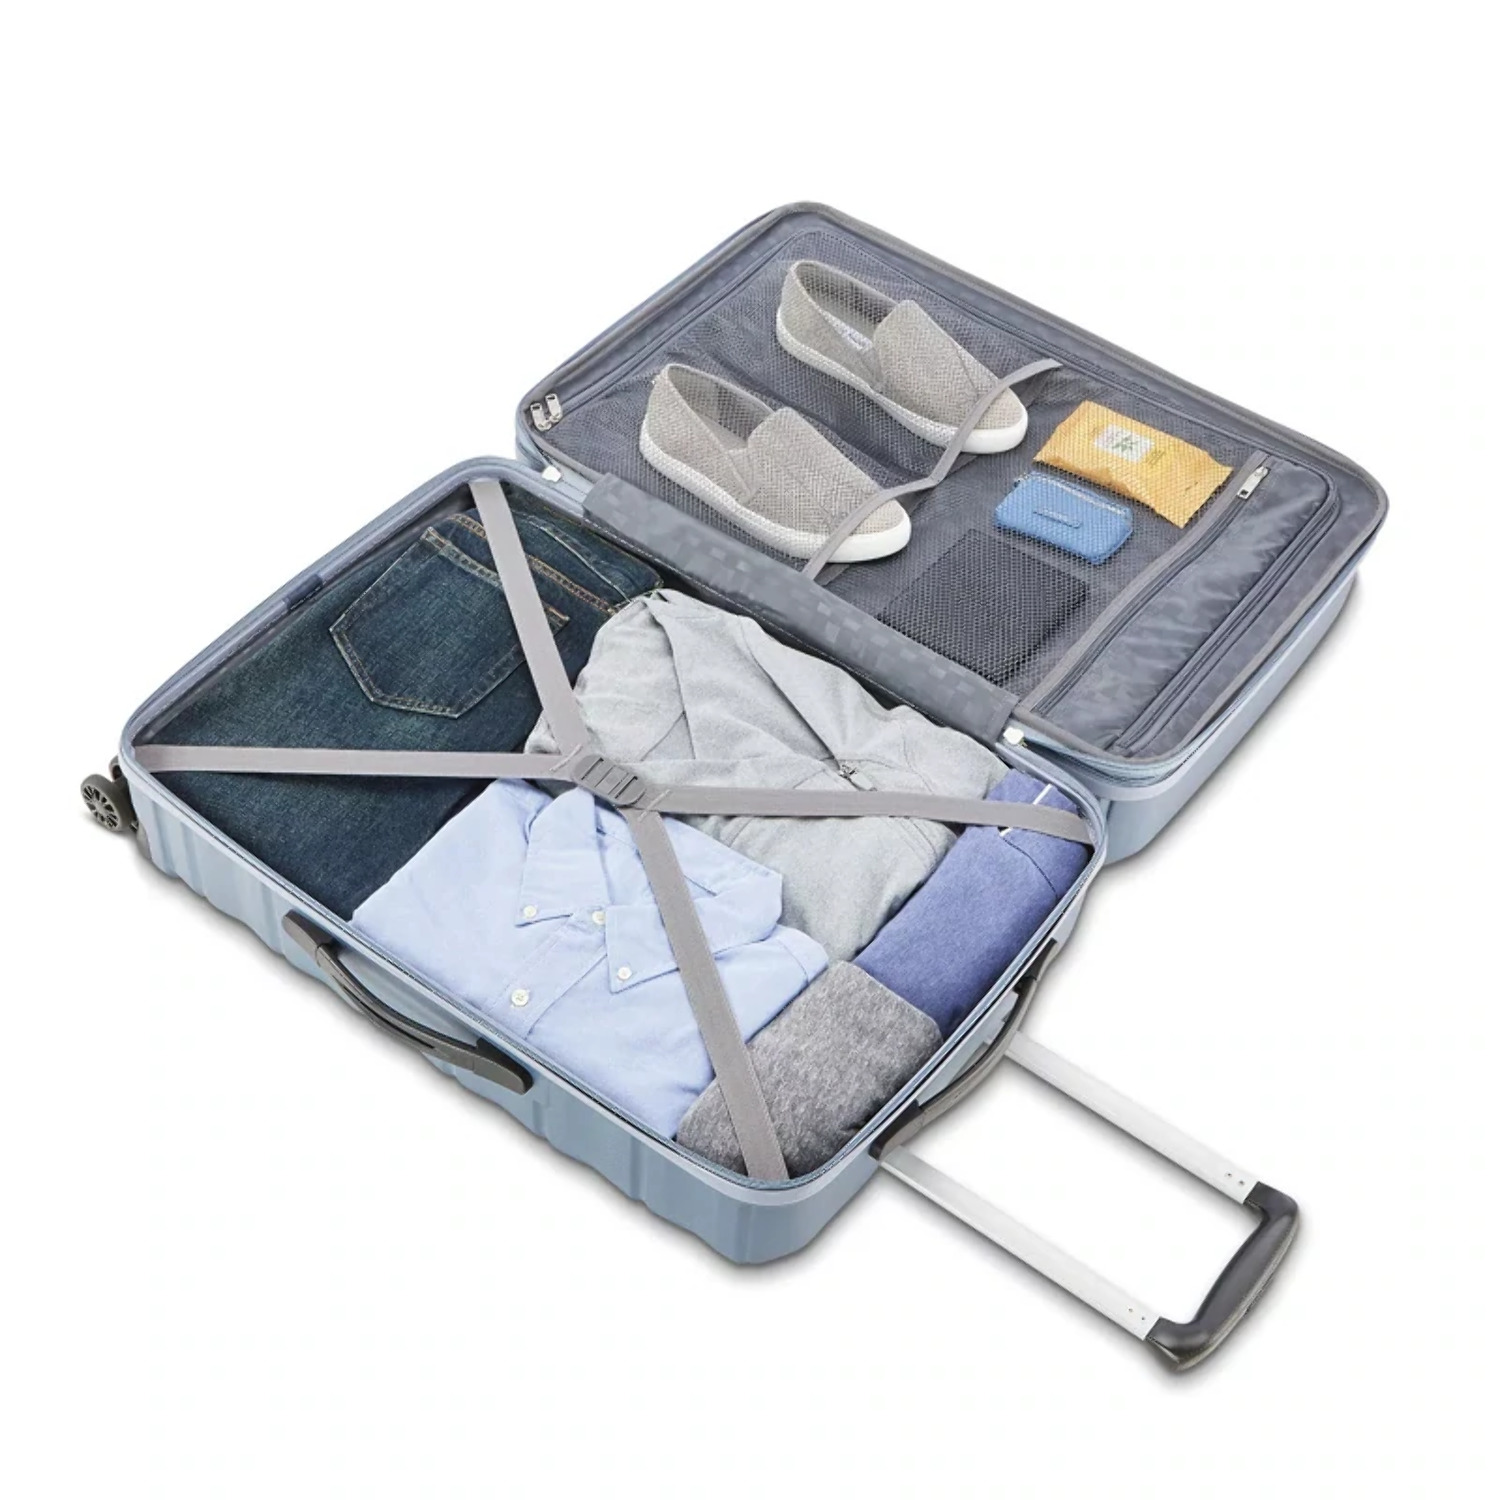 Samsonite Kingsbury Hardside Suitcase 2-Piece Luggage Set - Slate Blue - New - image 6 of 11